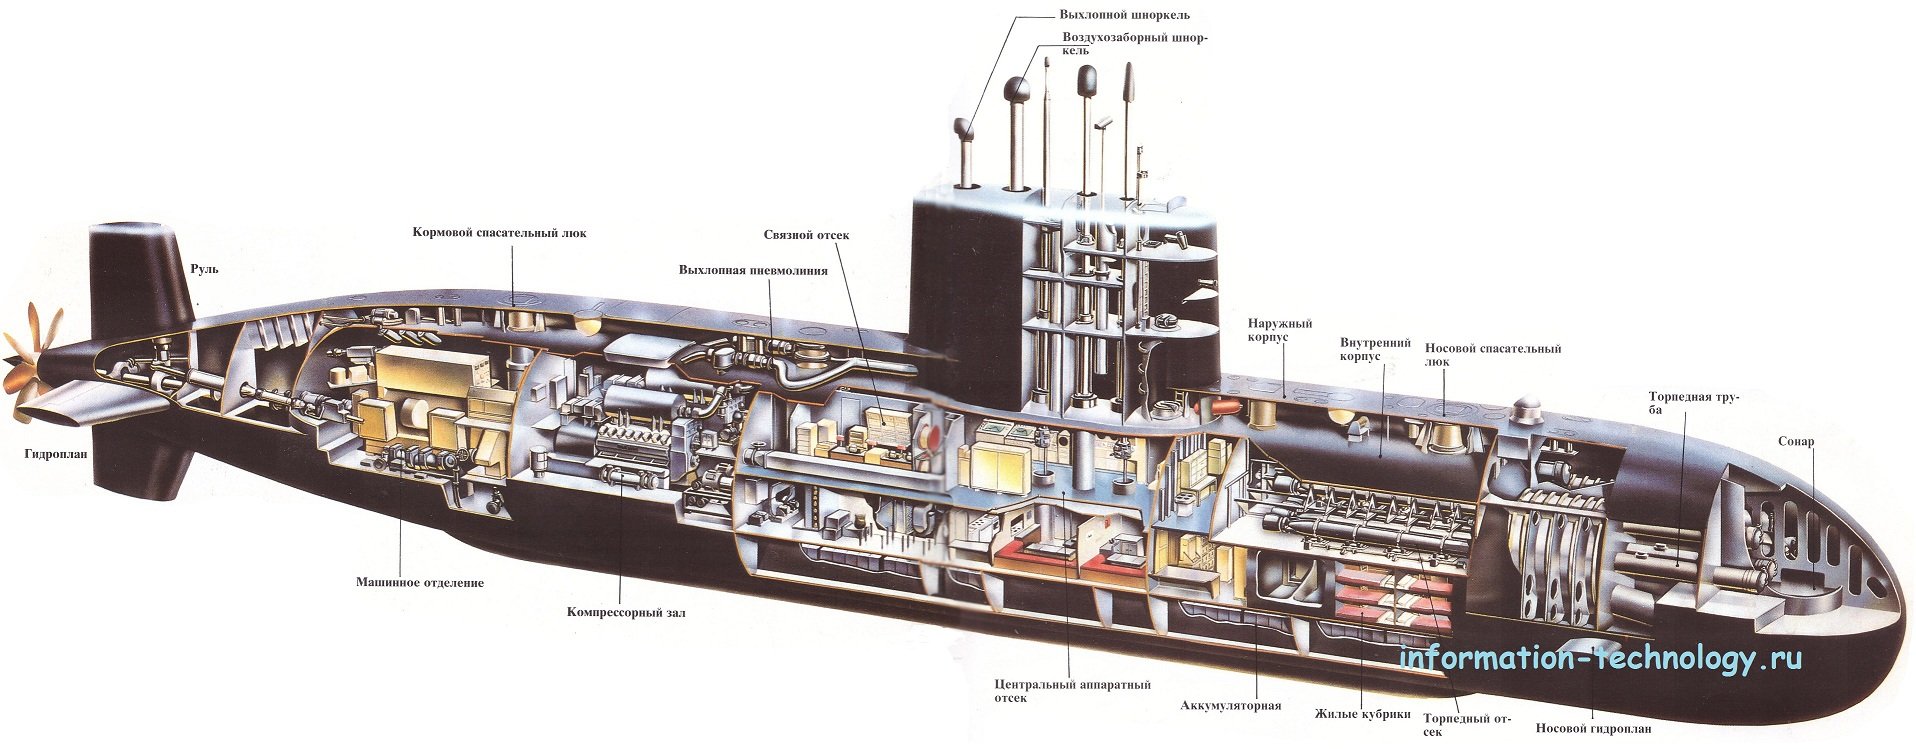 Корпус пл. Схема отсеков атомной подводной лодки «Курск». Строение подводной лодки Курск в разрезе. Атомная подводная лодка Курск в разрезе. Атомная подлодка Курск изнутри.